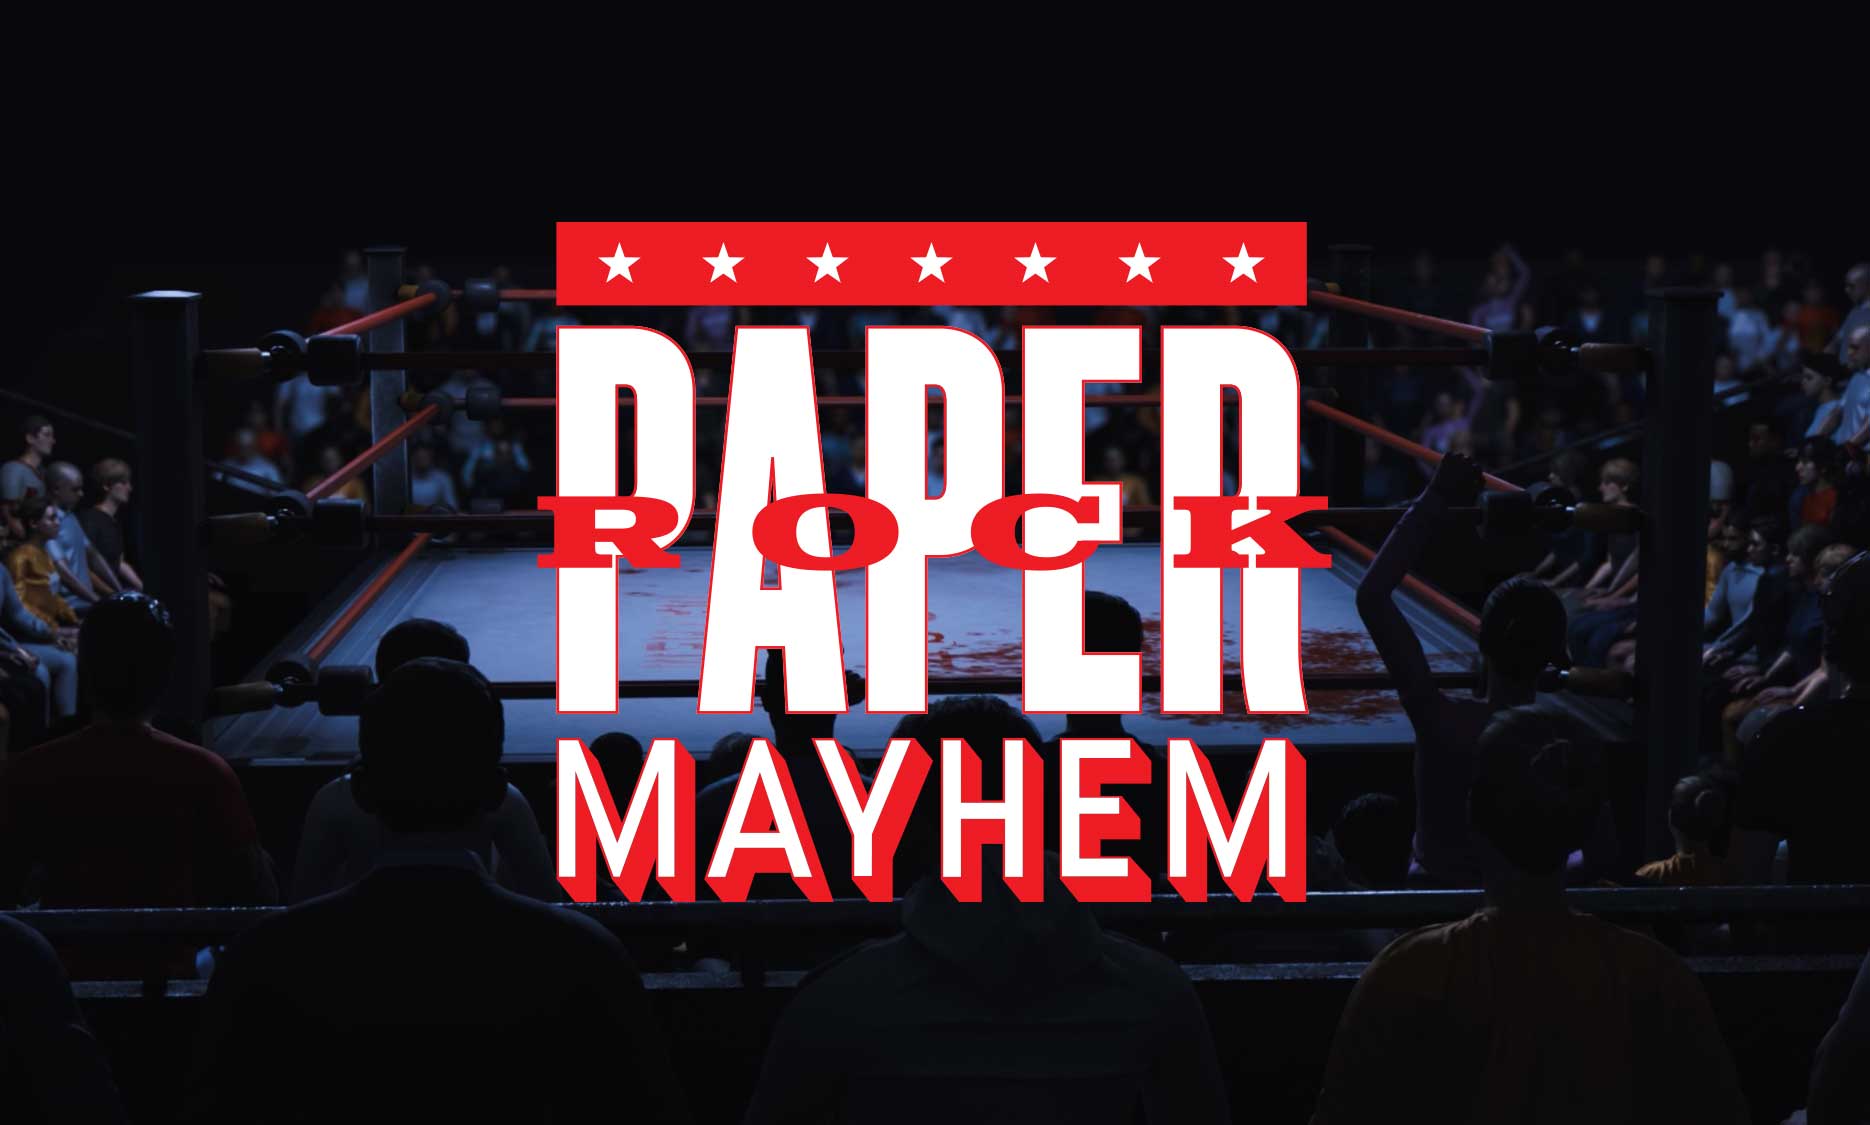 Rock, Paper, Mayhem logo over background image of a wrestling audience.